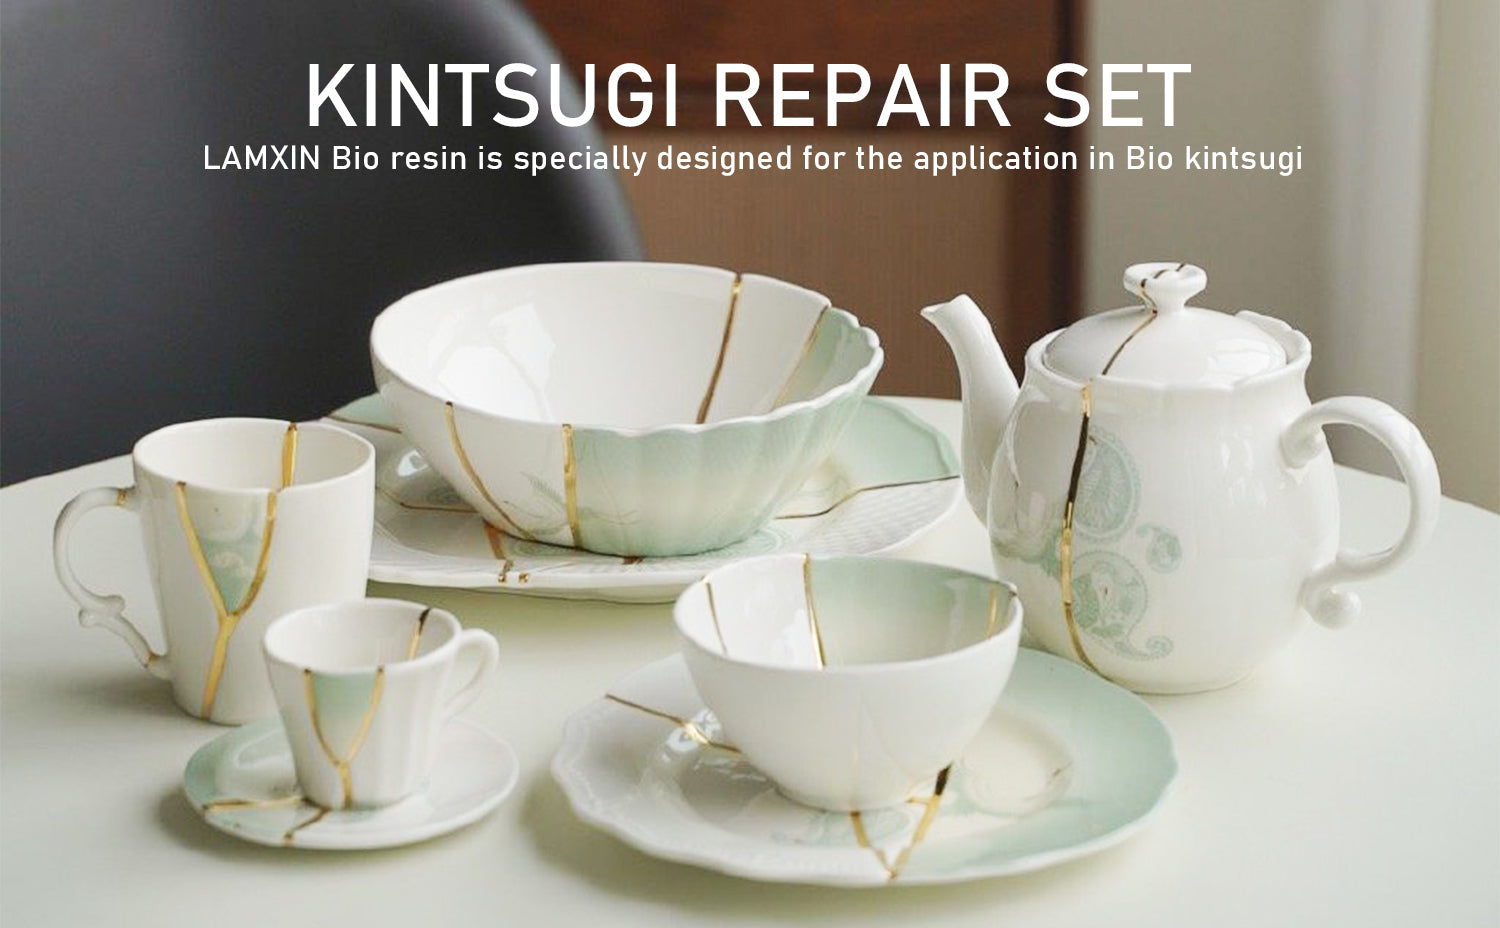  Bio Kintsugi Repair Kit, Food Safe Bio Resin Kintsugi Kit, Bio  Based - Dishwasher Safe - Repair Your Meaningful Objects with Bio Glue,  Perfect for Beginners, Japanese Art Kintsugi Craft